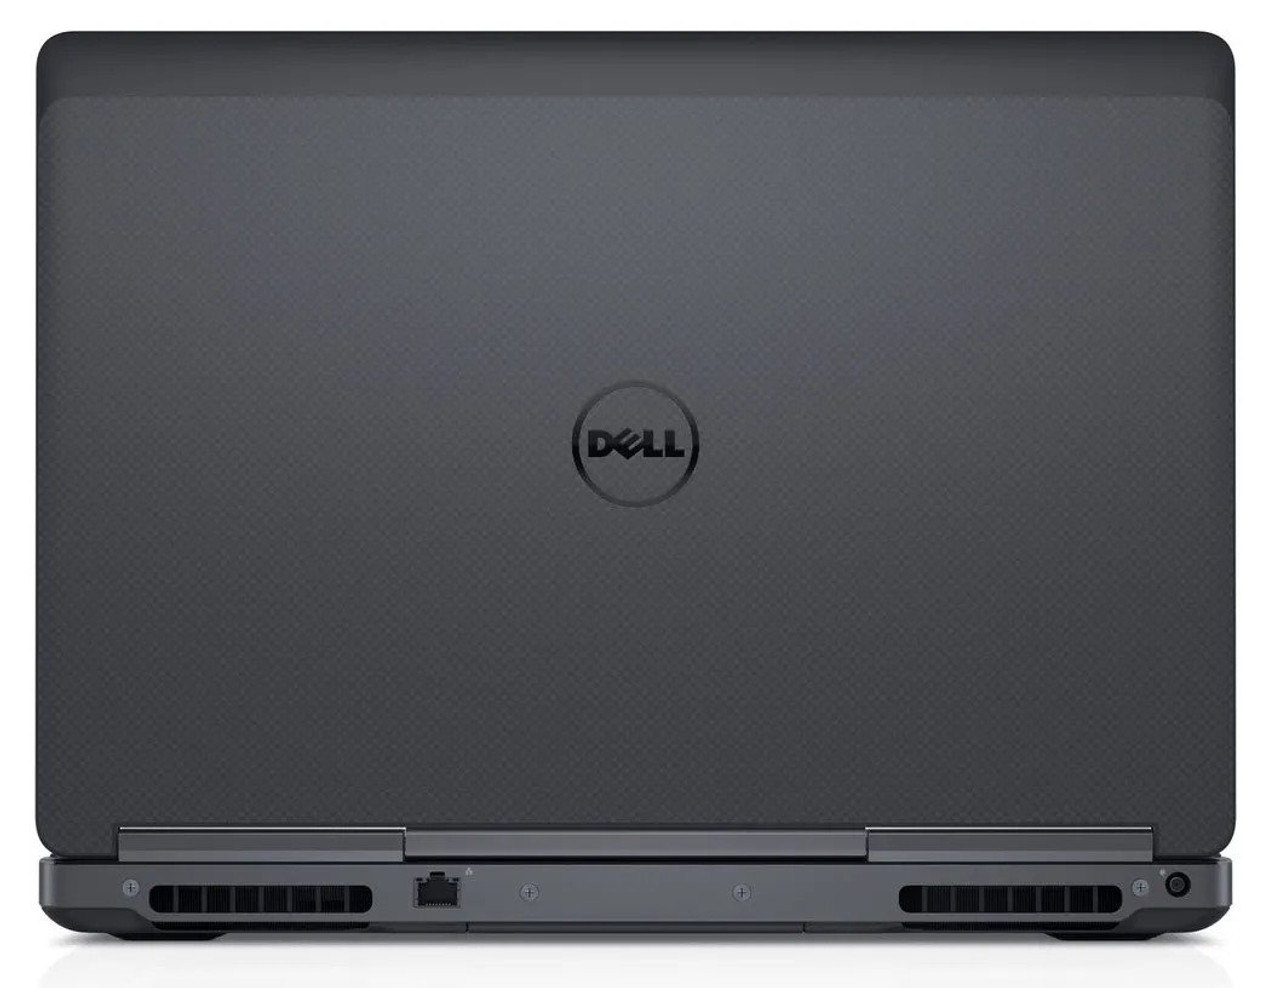 Dell Precision 7520 15.6" Intel Core i7 32 GB 512 GB SSD Windows 10 Pro Touch | Refurbished